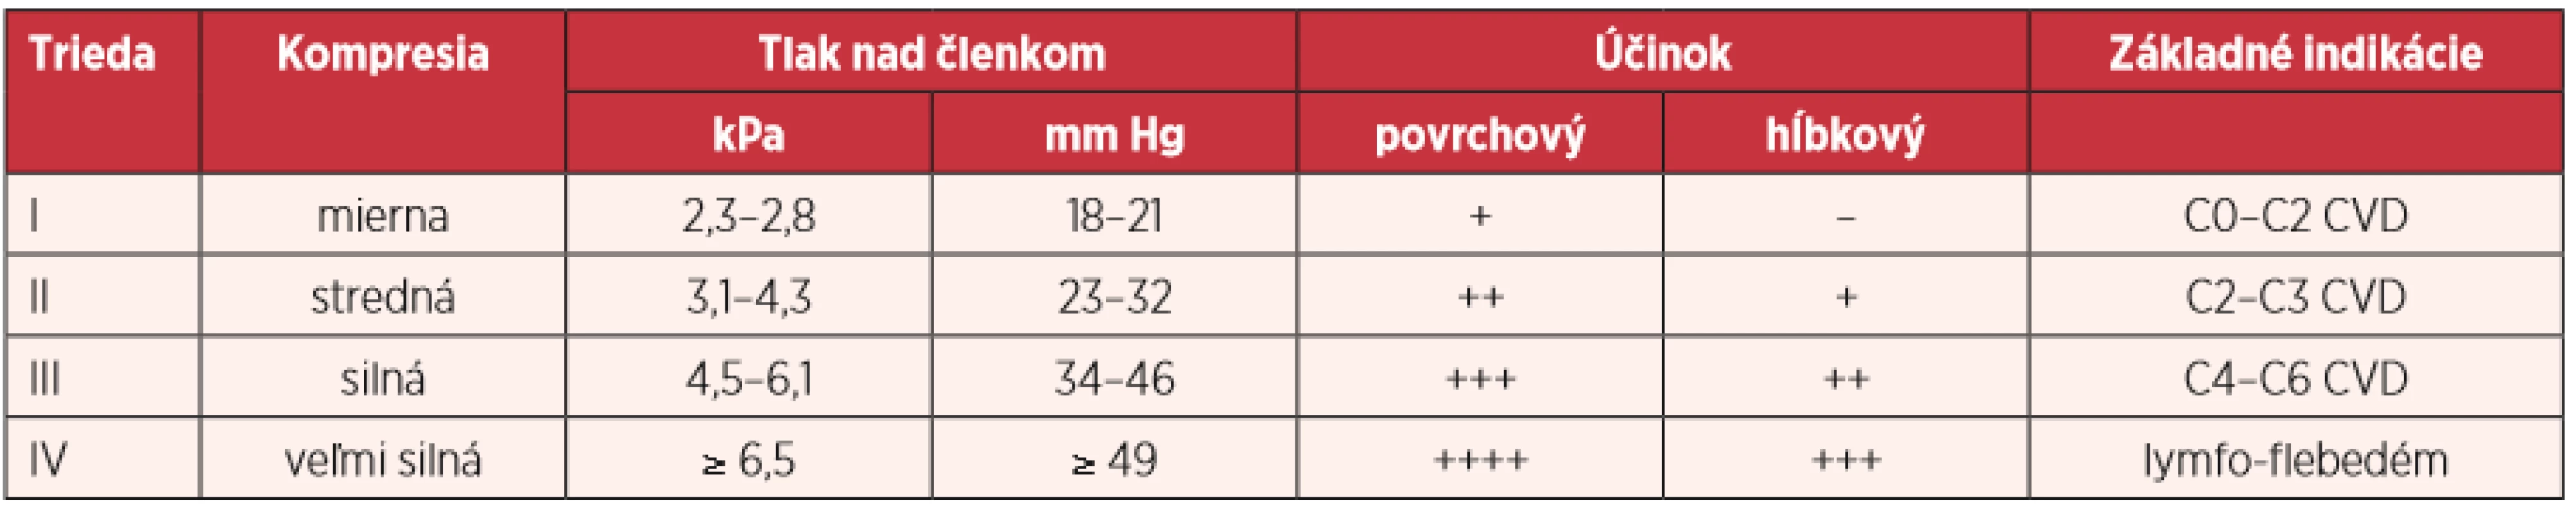 Průměrné hodnoty hemoglobinu u skupiny pacientů s pádem a bez pádu (g/l) 